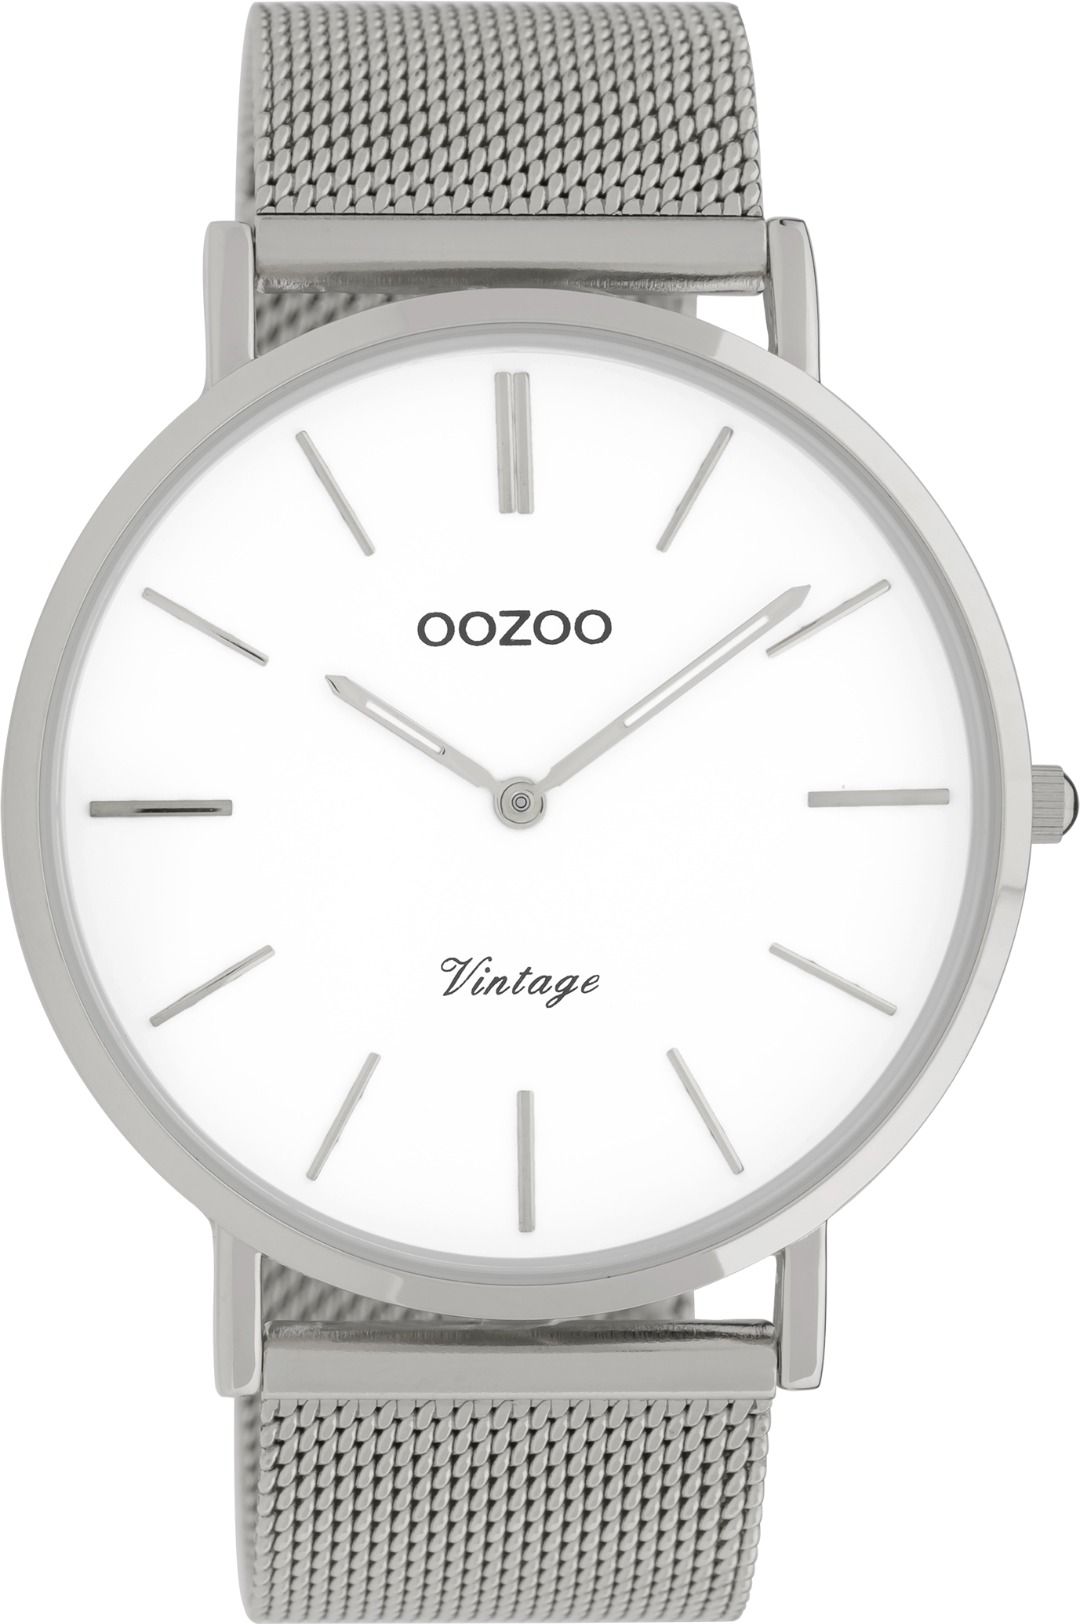 OOZOO Vintage 9900 - 44 mm